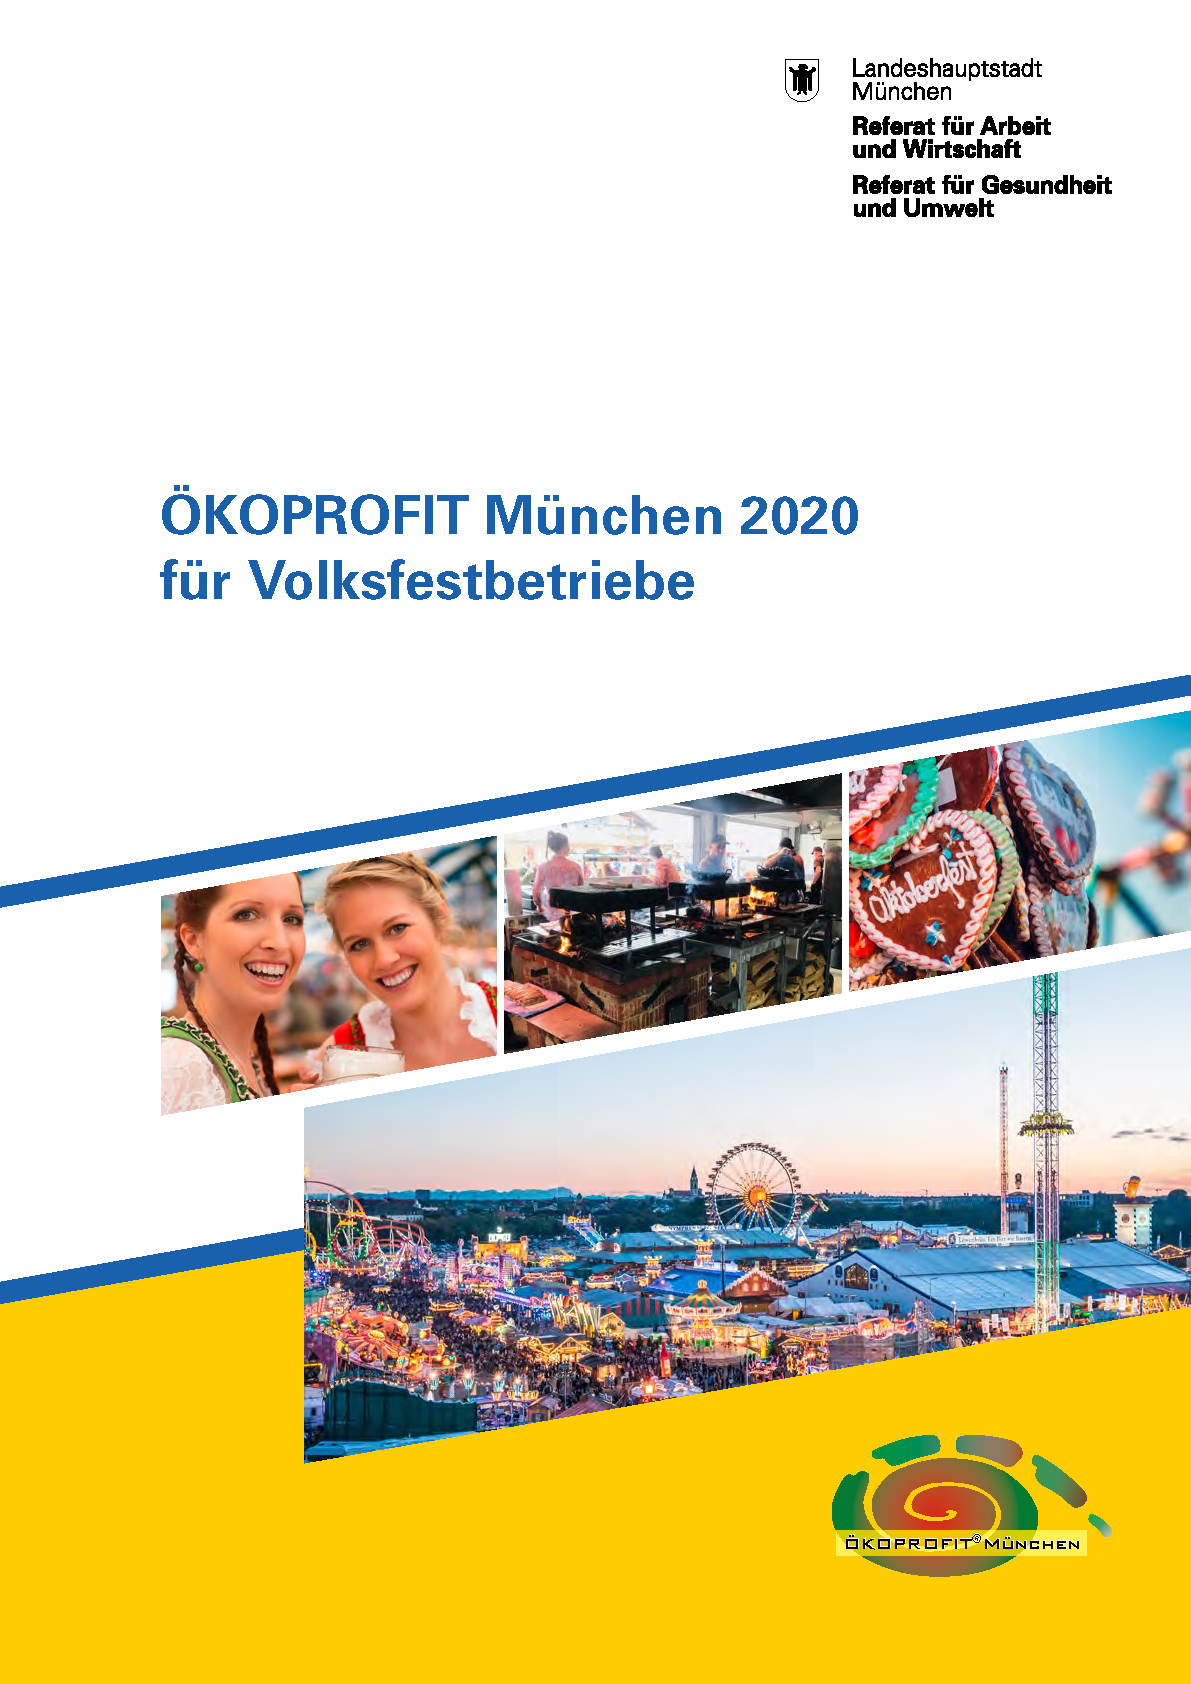 ÖKOPROFIT für Volksfestbetriebe 2020 – Landeshauptstadt München – Referat  für Arbeit und Wirtschaft